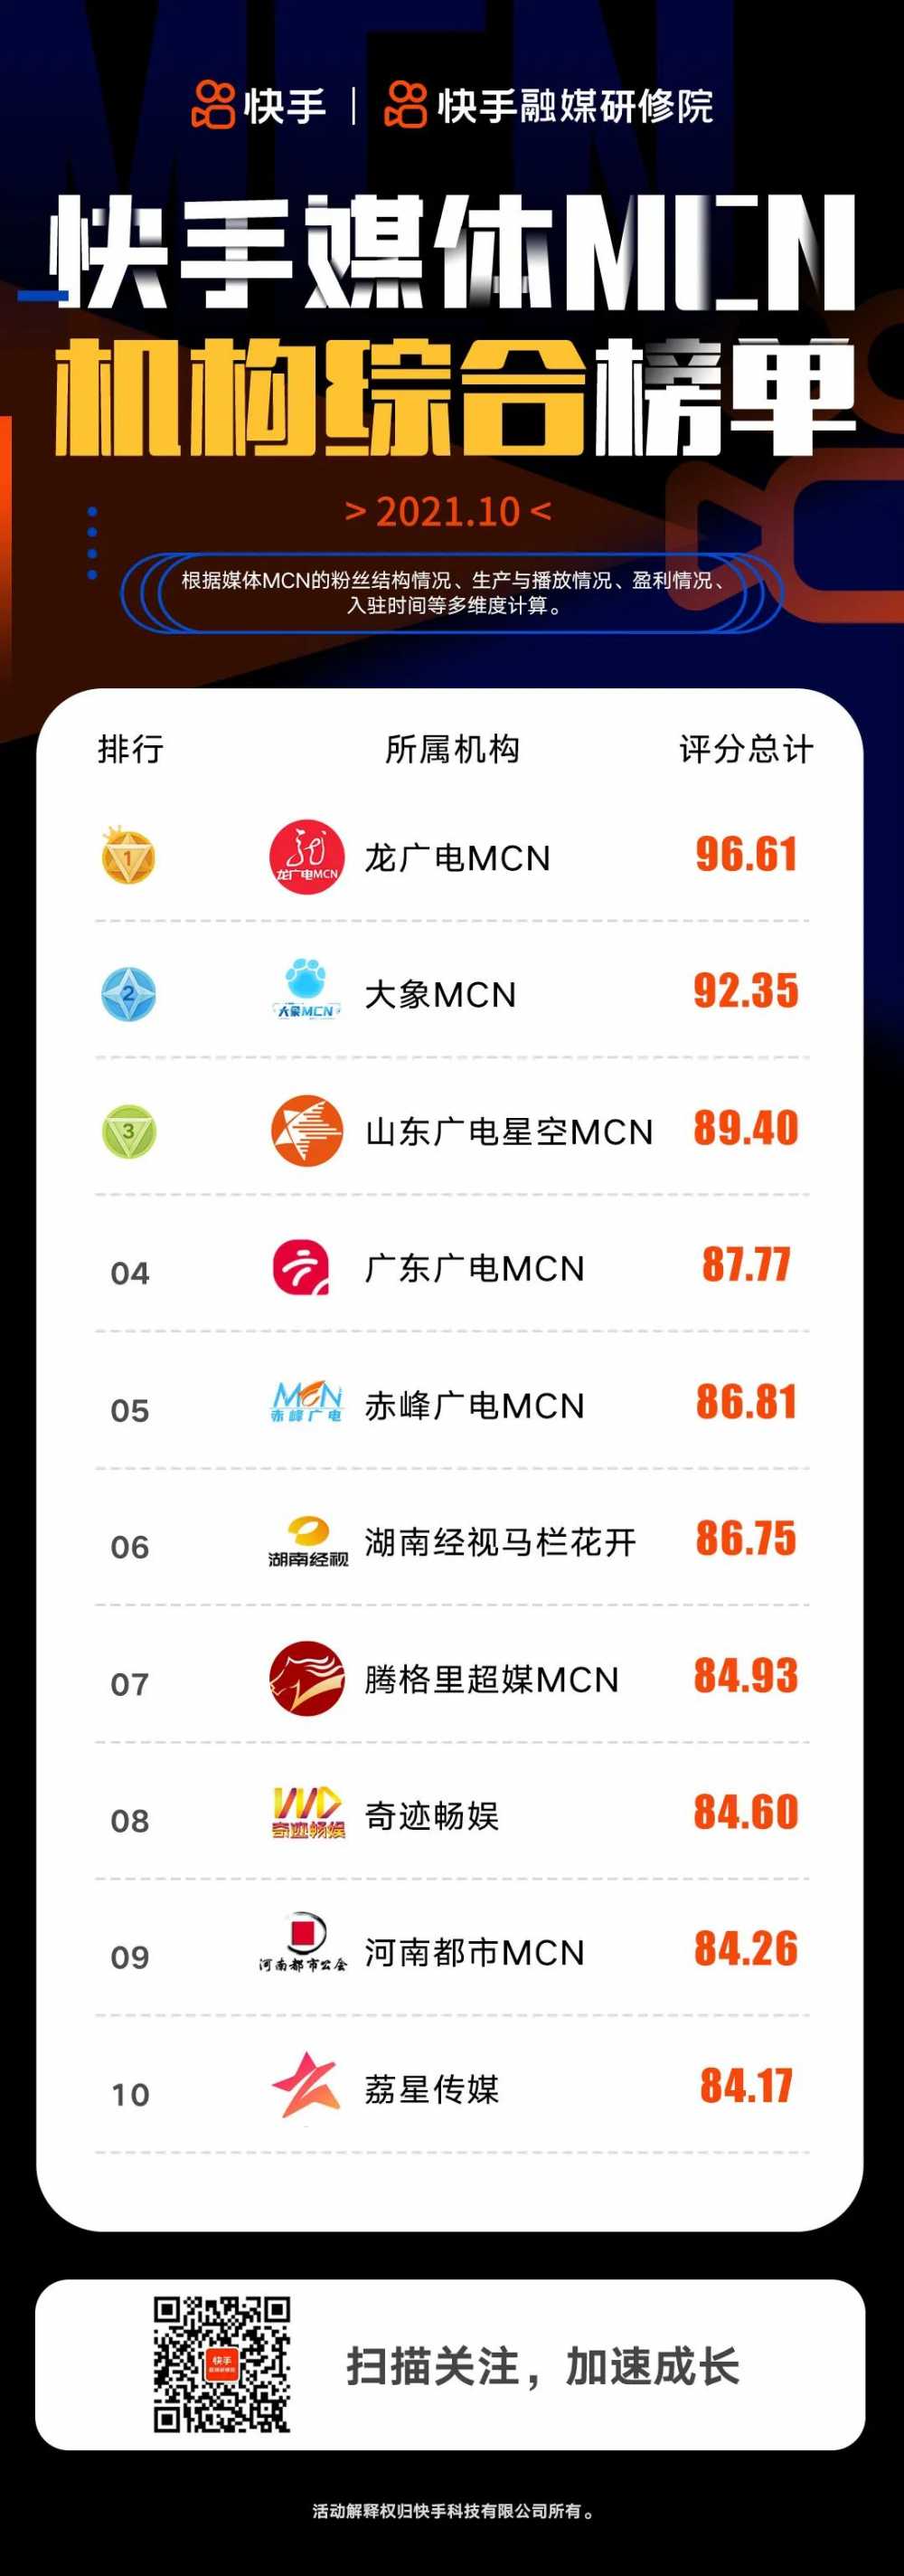 「快手媒体MCN」10月榜单发布丨融媒传达室-第2张图片-周小辉博客